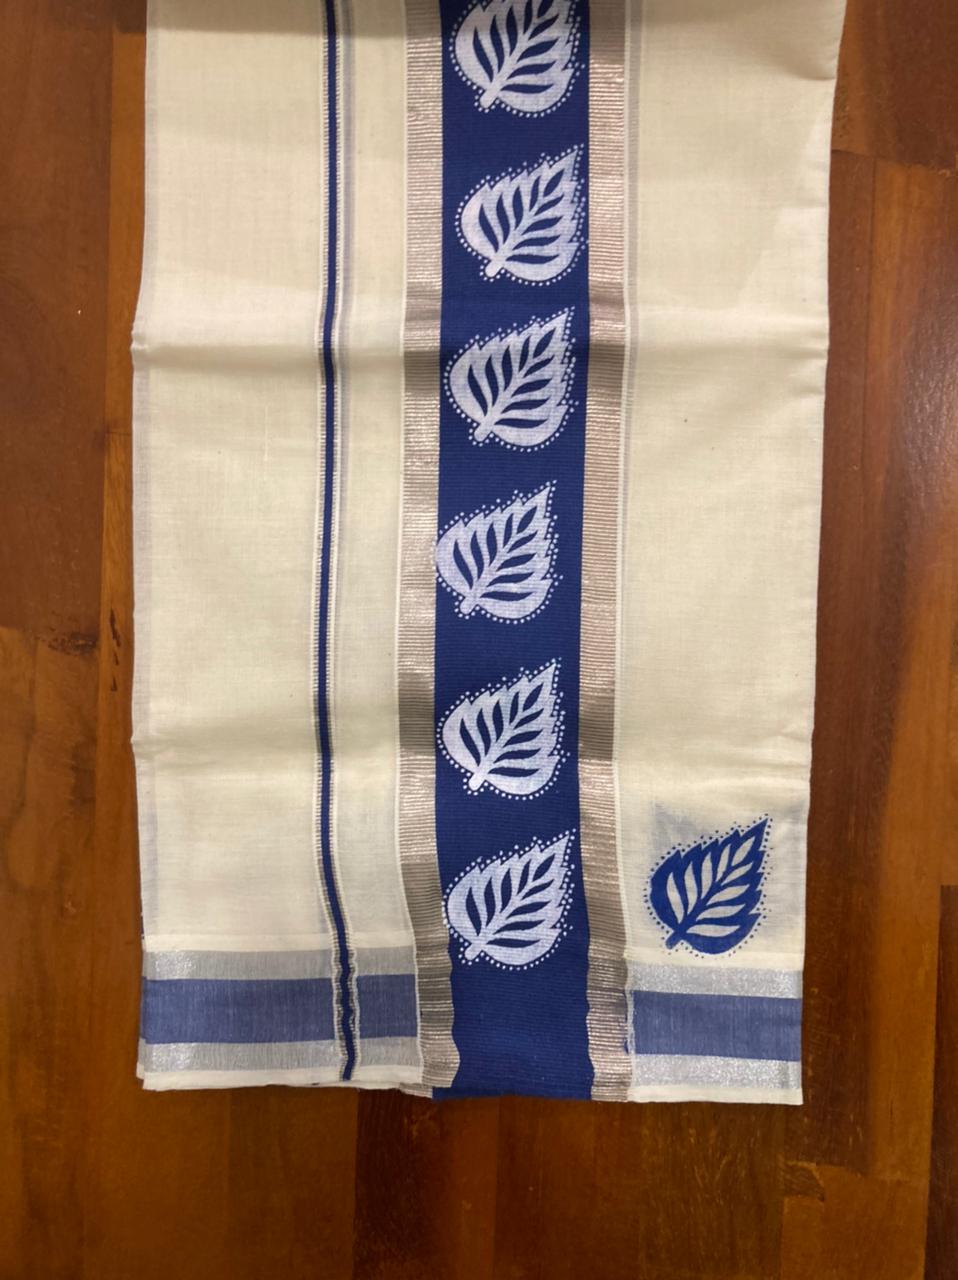 Kerala Cotton Mundum Neriyathum (Set Mundu) with Block Prints on Silver Kasavu and Blue Border 2.80 Mtrs